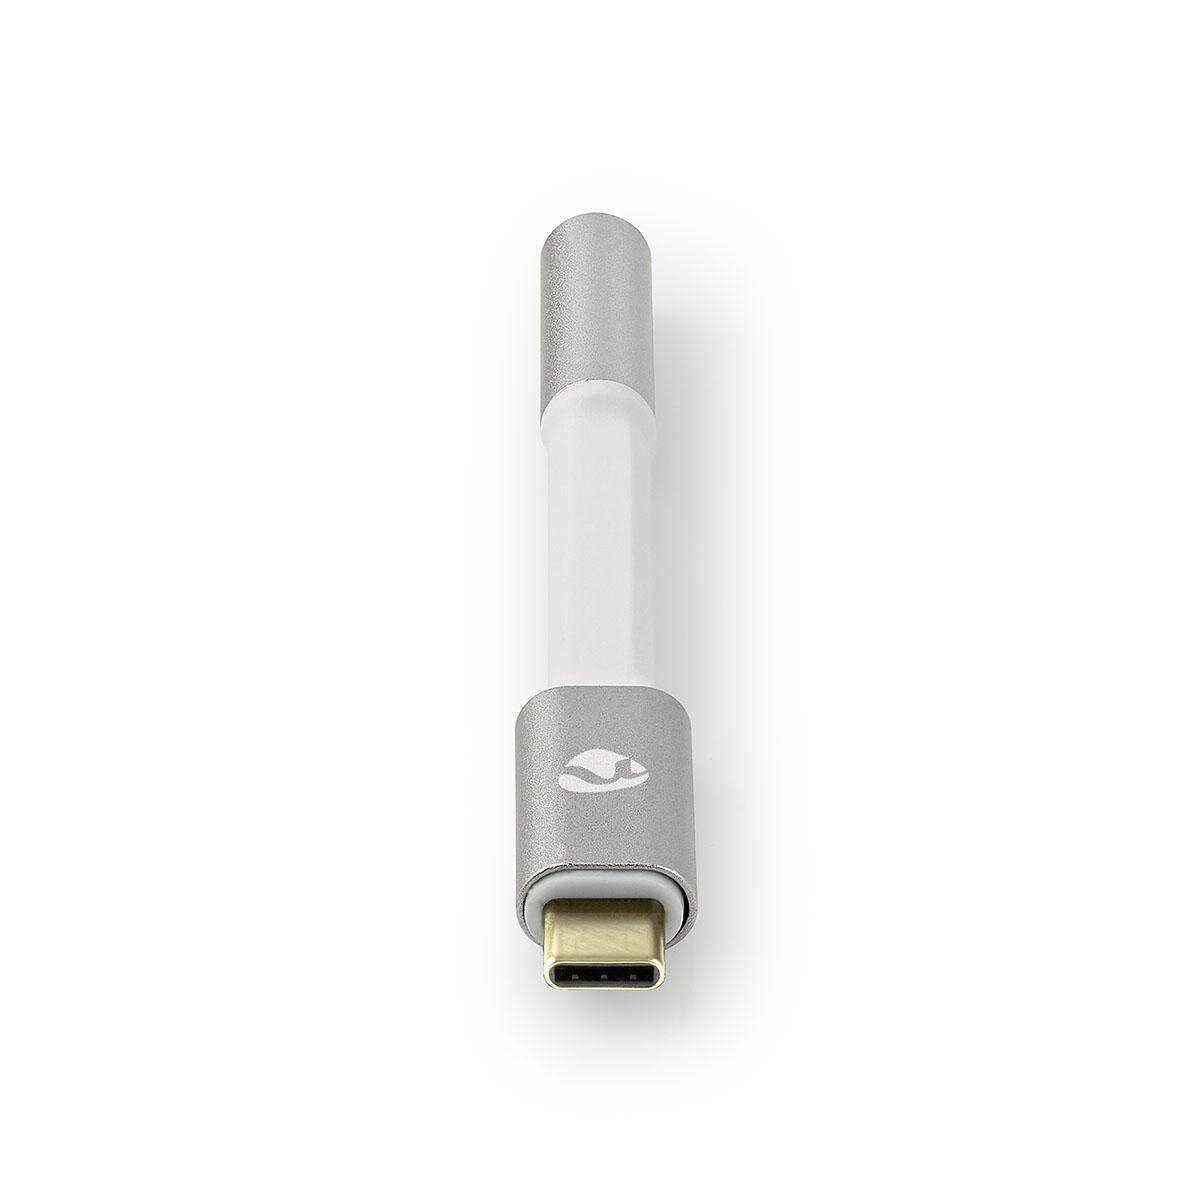 Nedis USB-Adapter | USB 2.0 | USB-C™ Stecker | 3.5 mm Buchse | 0.08 m | rund | Vergoldet | Geflochten / Nylon | Silber / Weiss | Verpackung mit Sichtf von Nedis